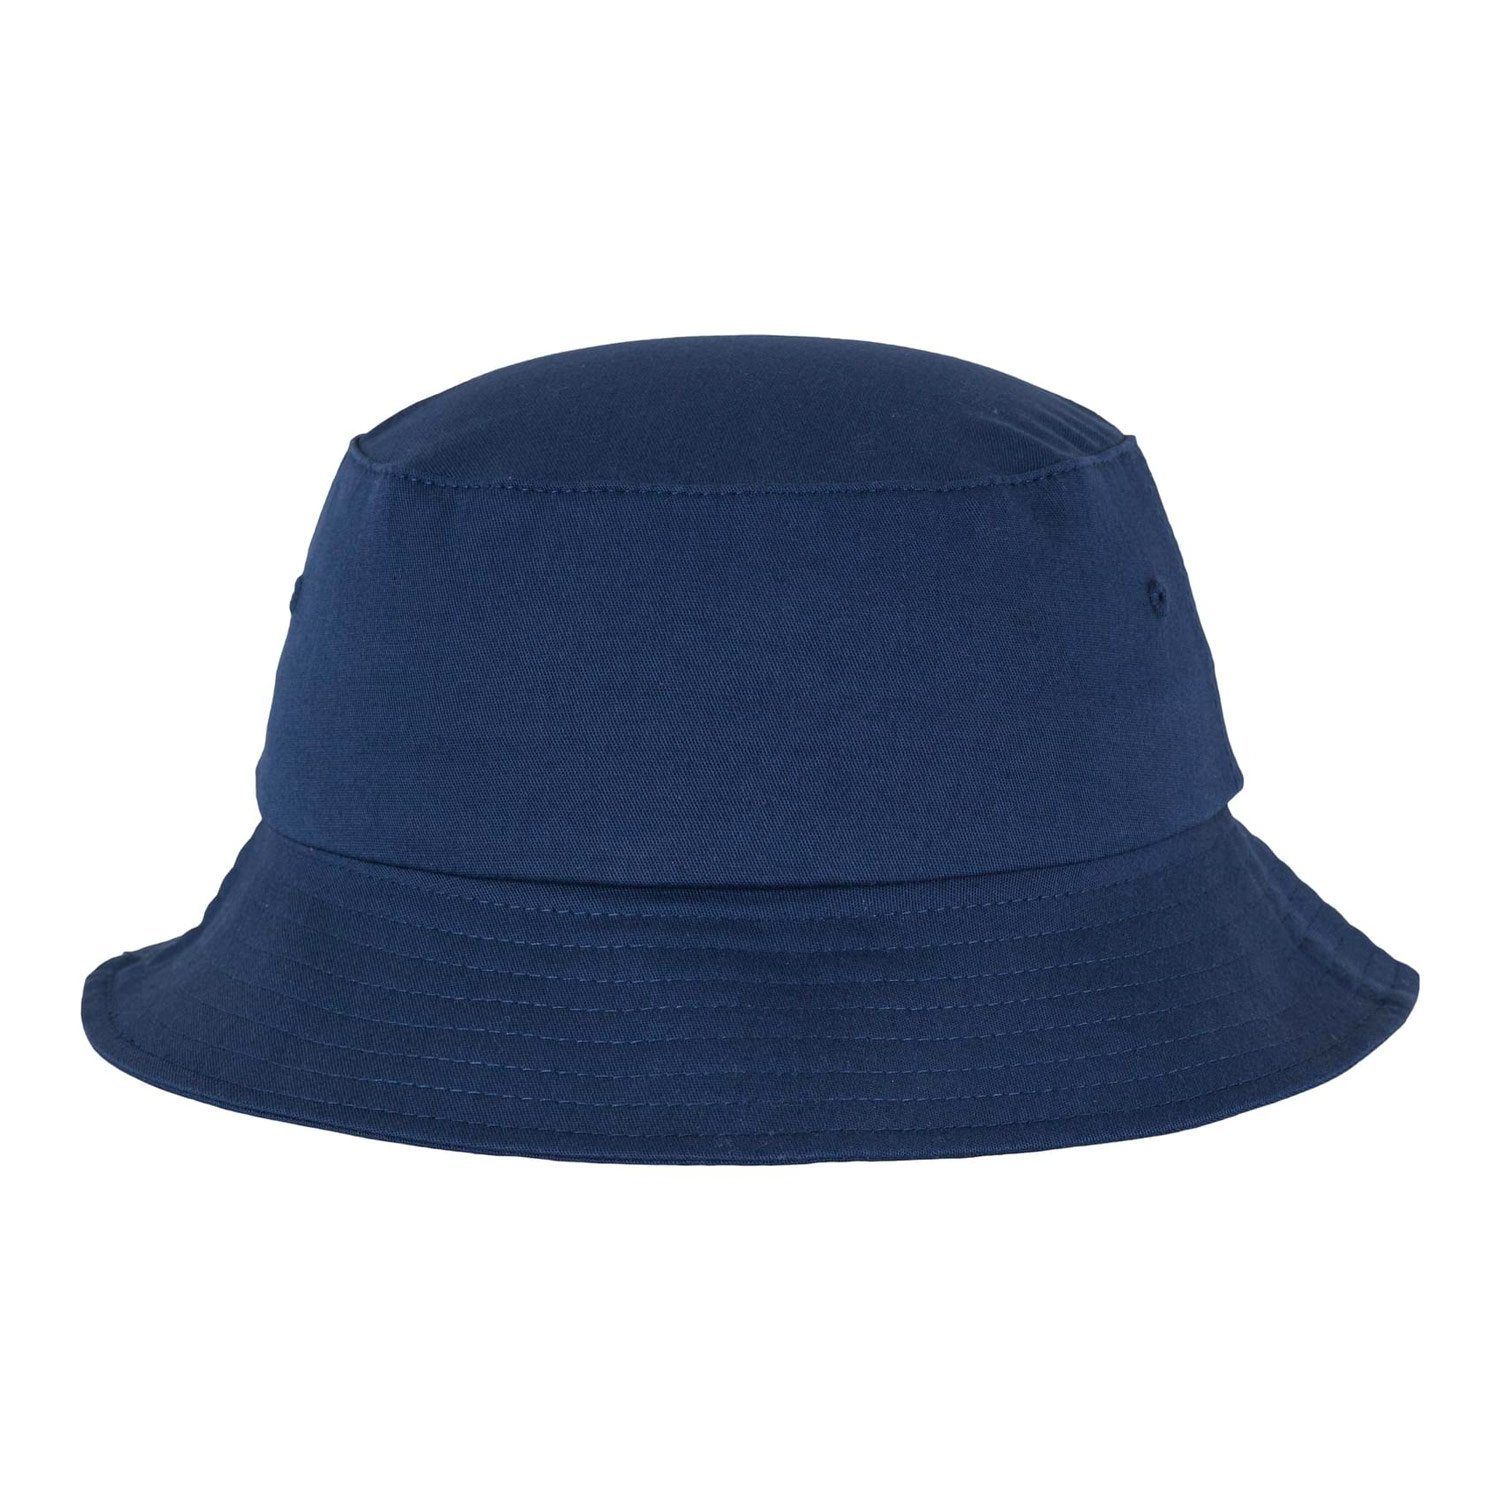 Cap Flexfit Twill Cotton komfortablen Hat, Flexfit für Tragekomfort Flex Krone Elastangewebte Accessoires Bucket